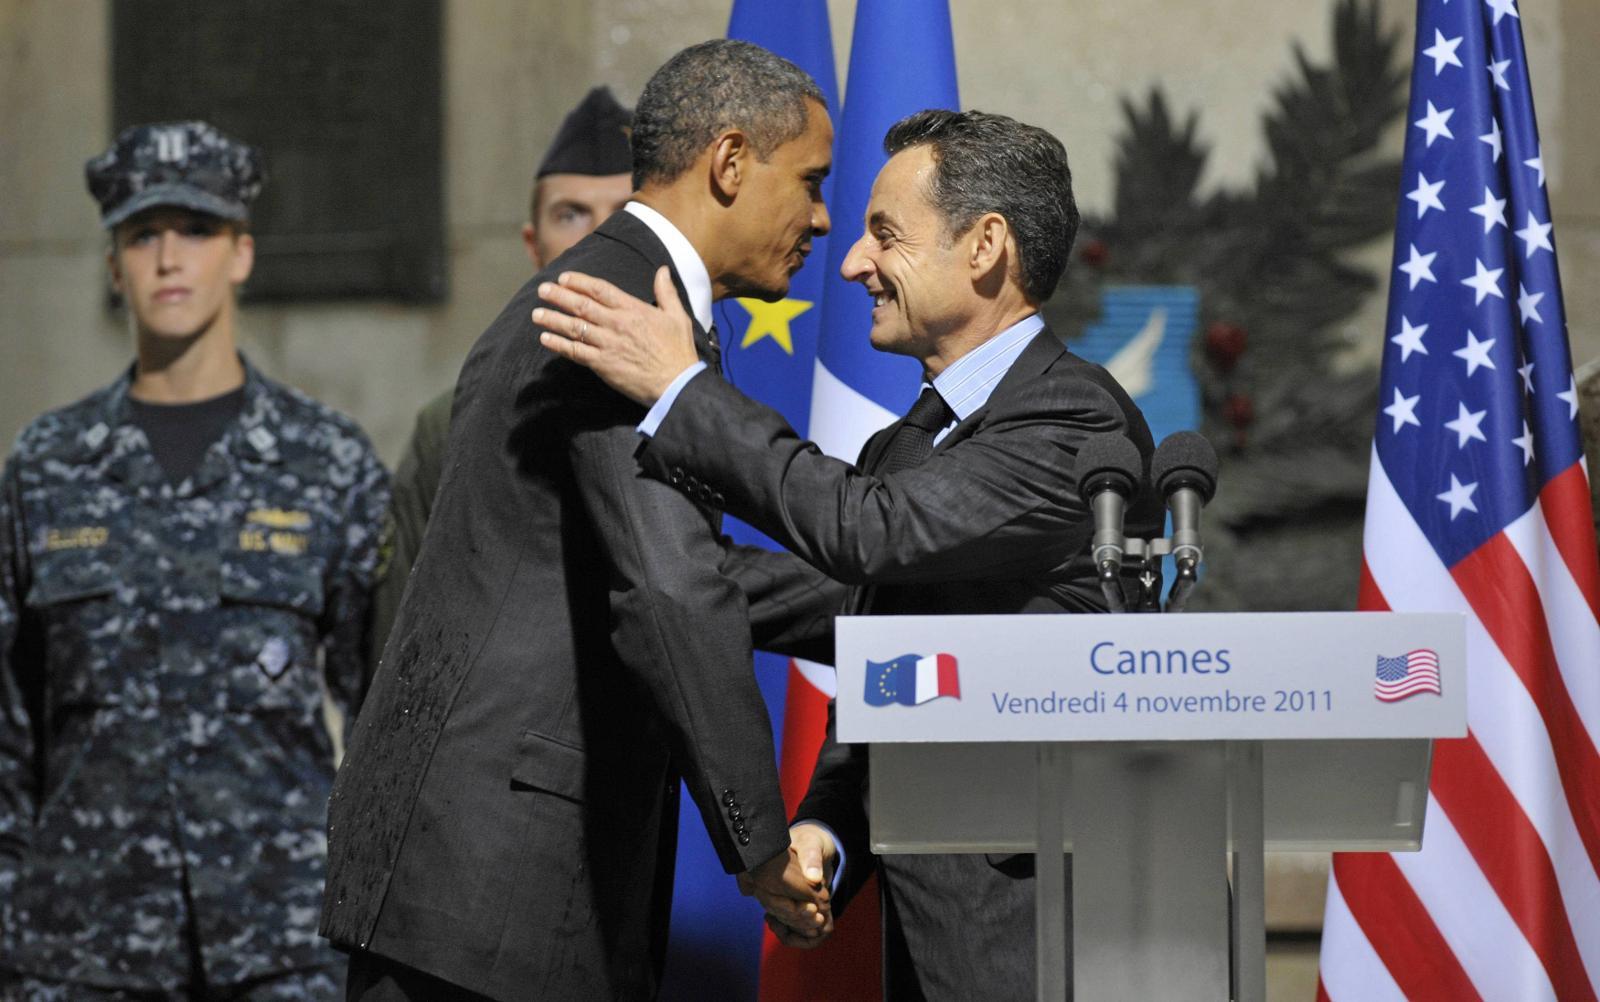 November 2011: President Obama og president Sarkozy baksnakket Netanyahu, men ble overhørt.